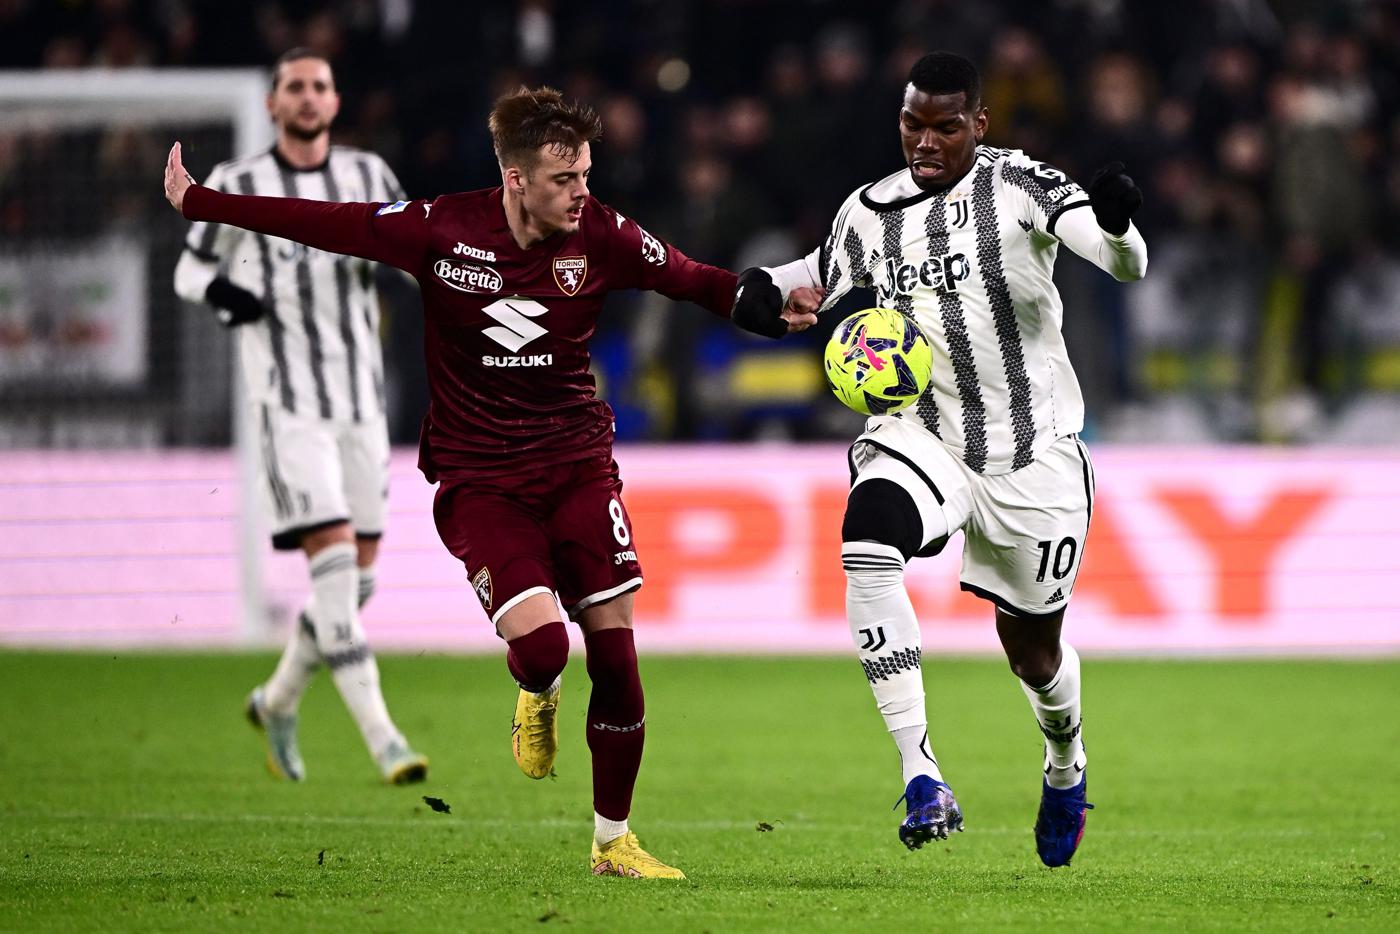 Juventus - Turin - 4-2. Italienische Meisterschaft, Runde 24. Spielbericht, Statistik.